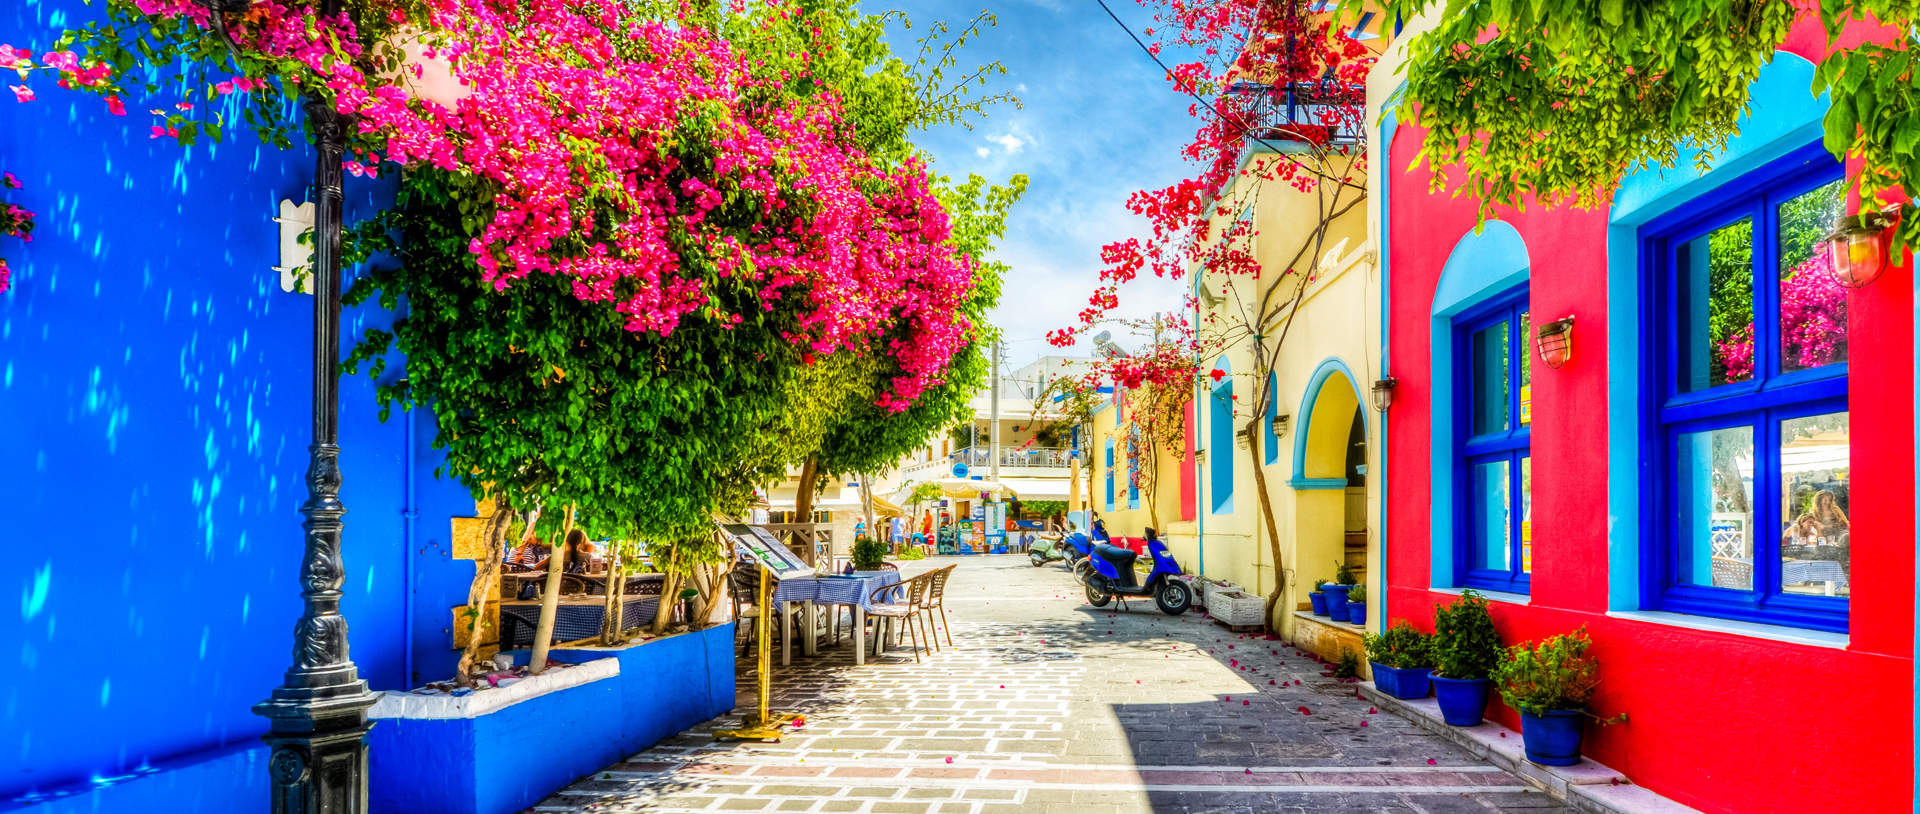 Beautiful Street In Kos Greece